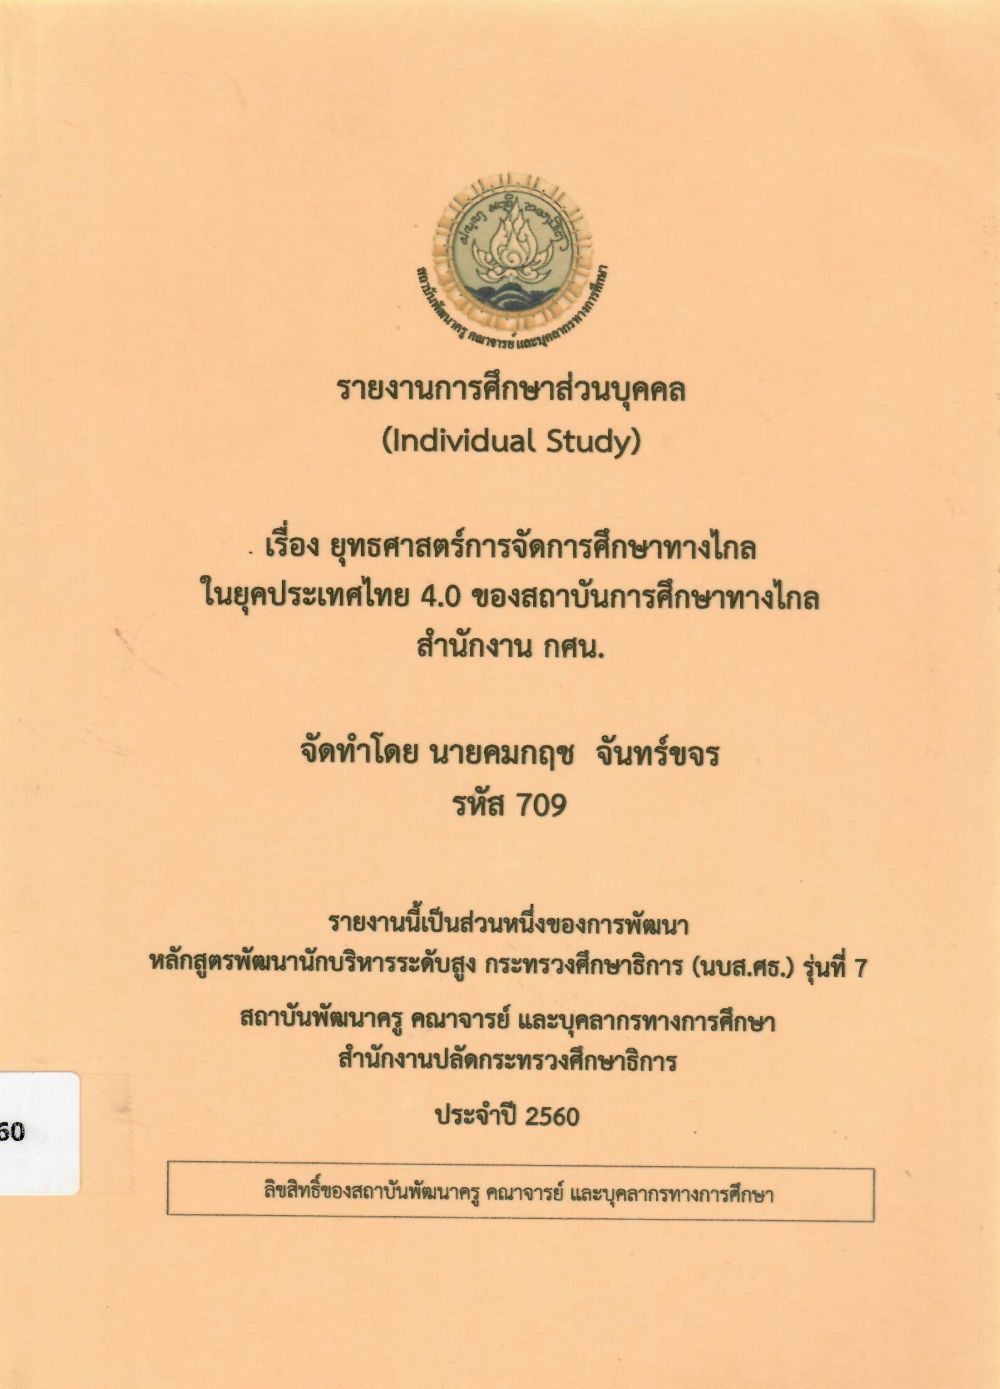 ยุทธศาสตร์การจัดการศึกษาทางไกลในยุคประเทศไทย 4.0 ของสถาบันการศึกษาทางไกลสำนักงาน กศน.: รายงานการศึกษาส่วนบุคคล (Individual Study)/ คมกฤช จันทร์ขจร